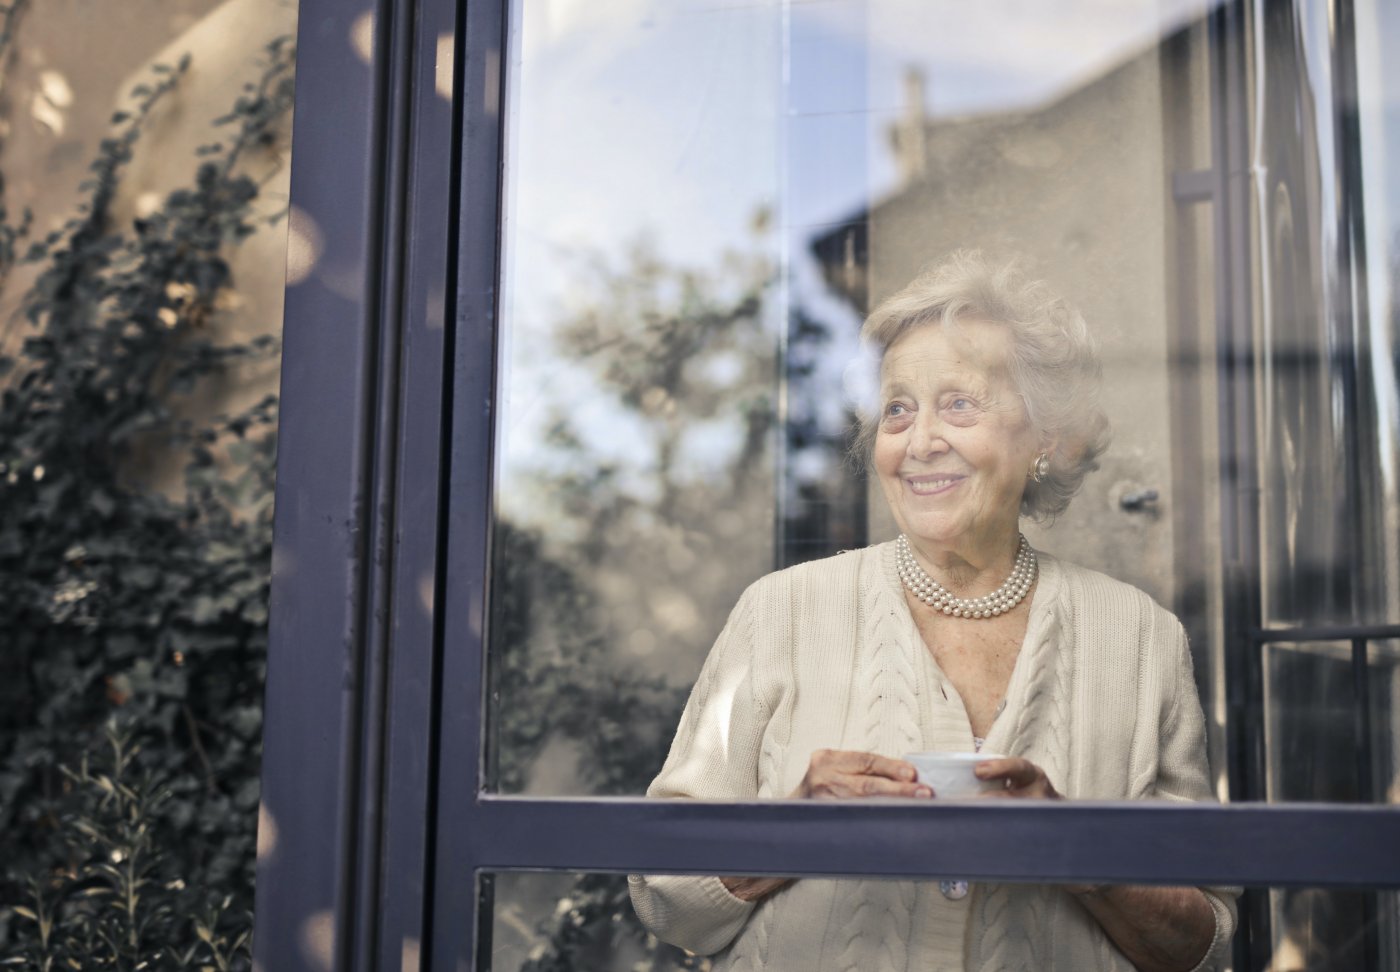 Starsza, uśmiechnięta kobieta widziana zza szyby okna swojego domu. Ma siwe włosy, ubrana jest w jasny, kremowy sweter, w dłoniach trzyma białą filiżankę z porcelany.